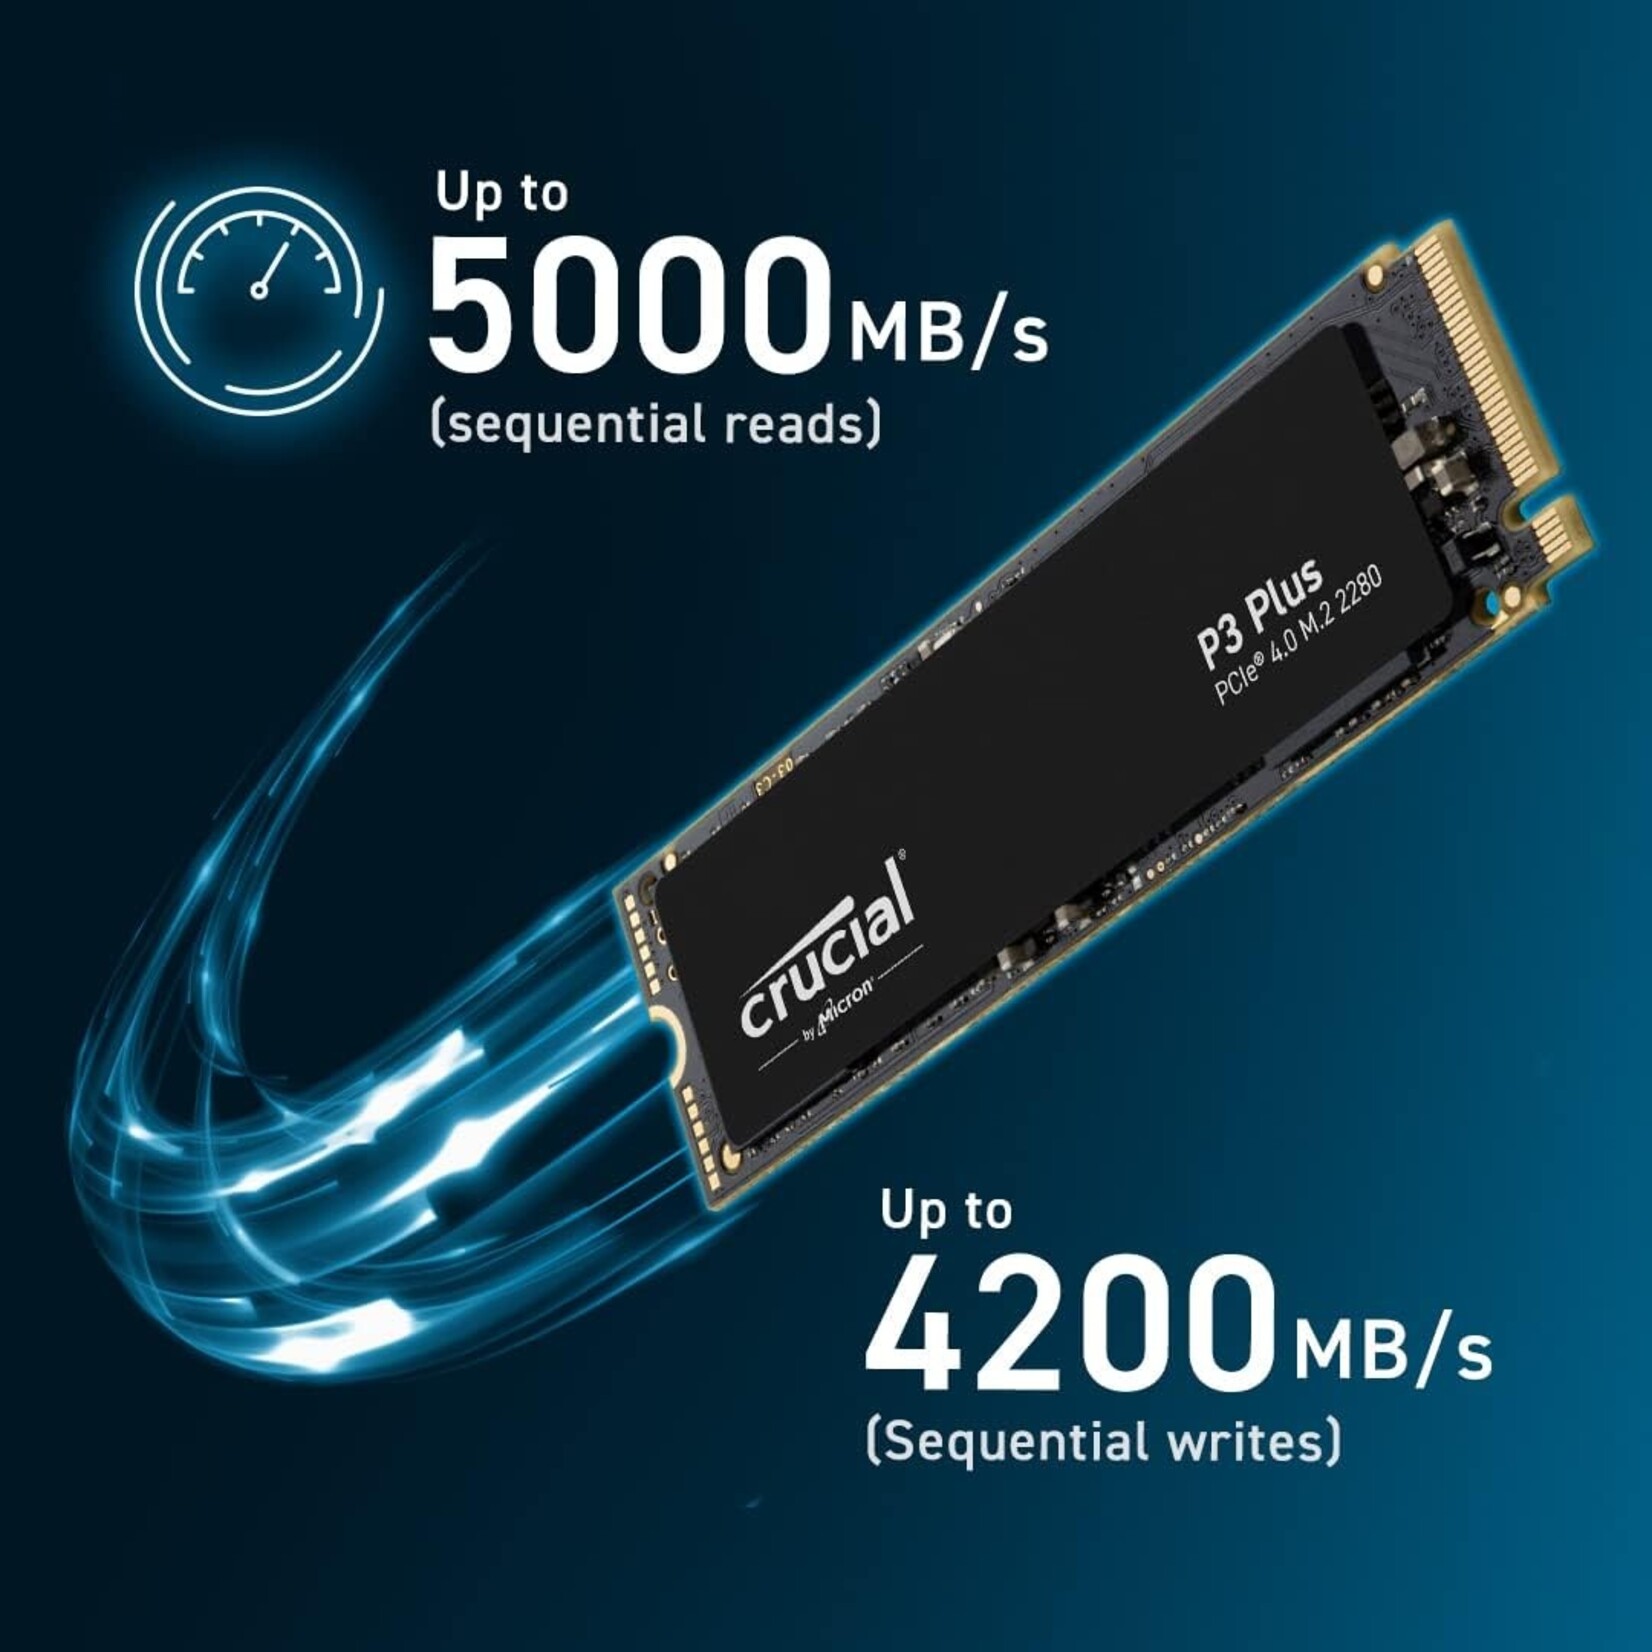 Crucial P3 Plus 500GB PCIe Gen4 NVMe - Showtime Computer